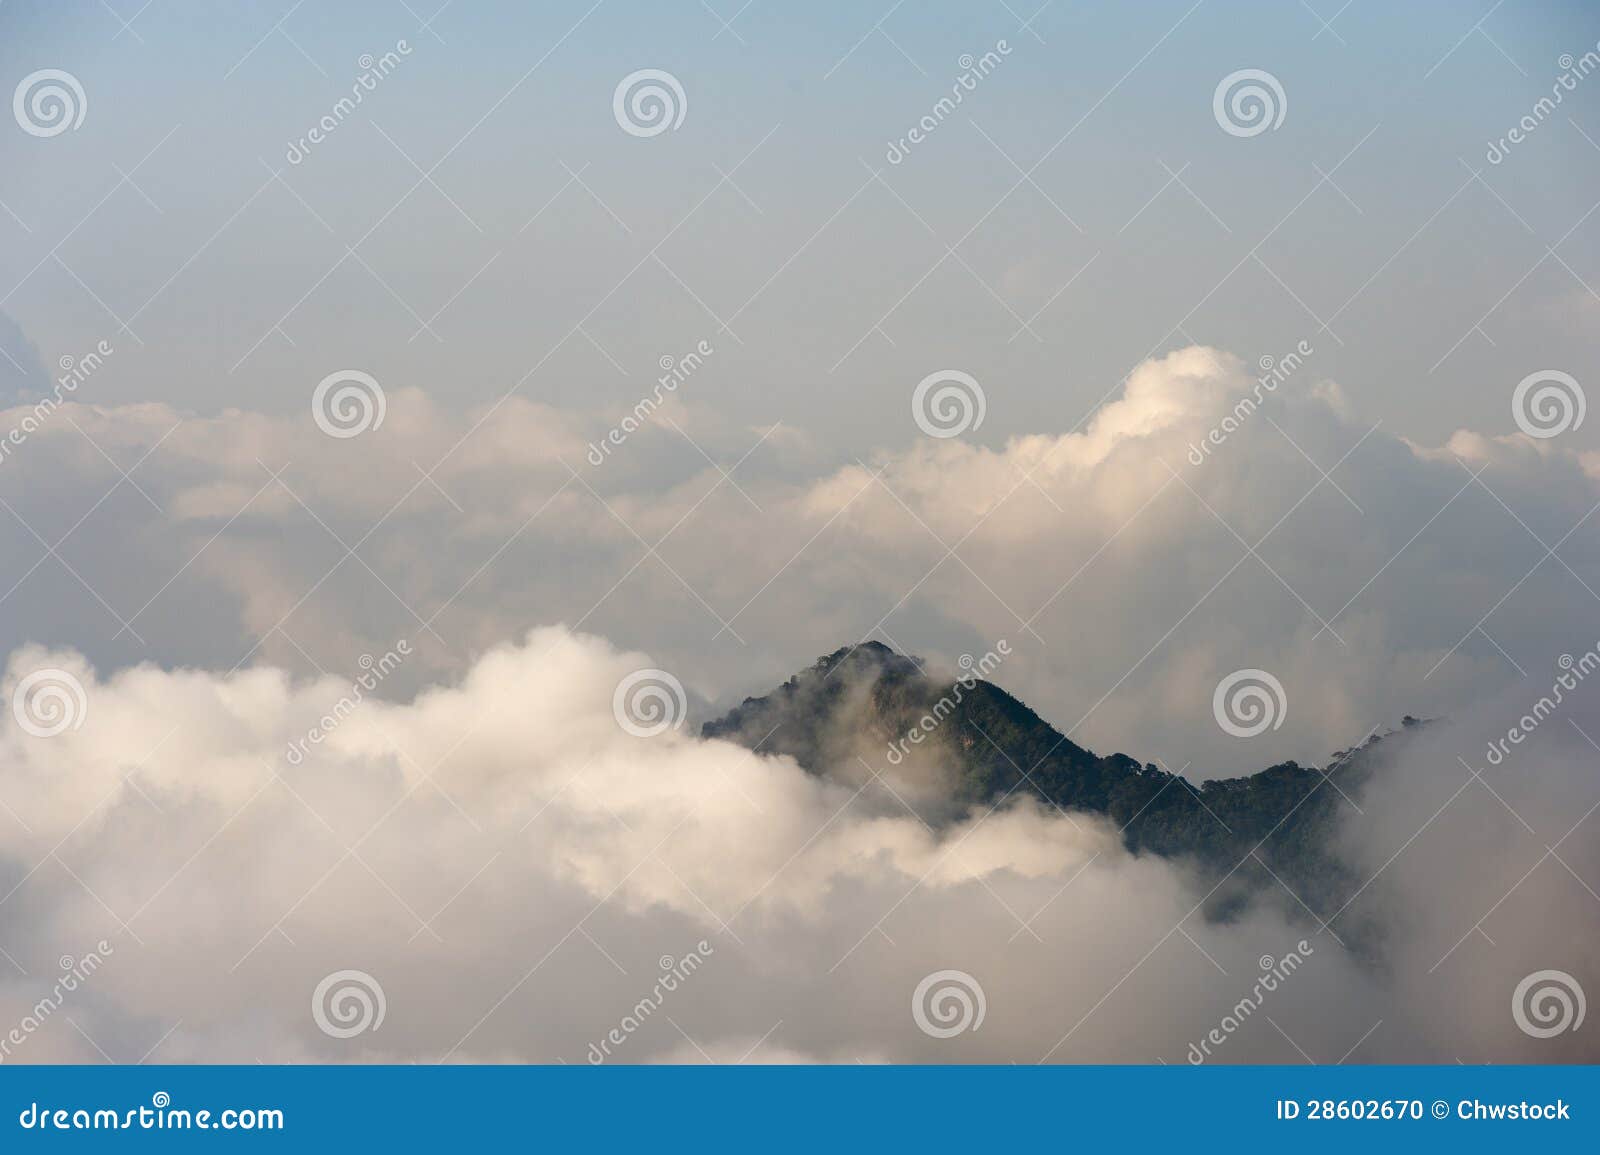 colombia - mountain peak in the sierra nevada de santa marta